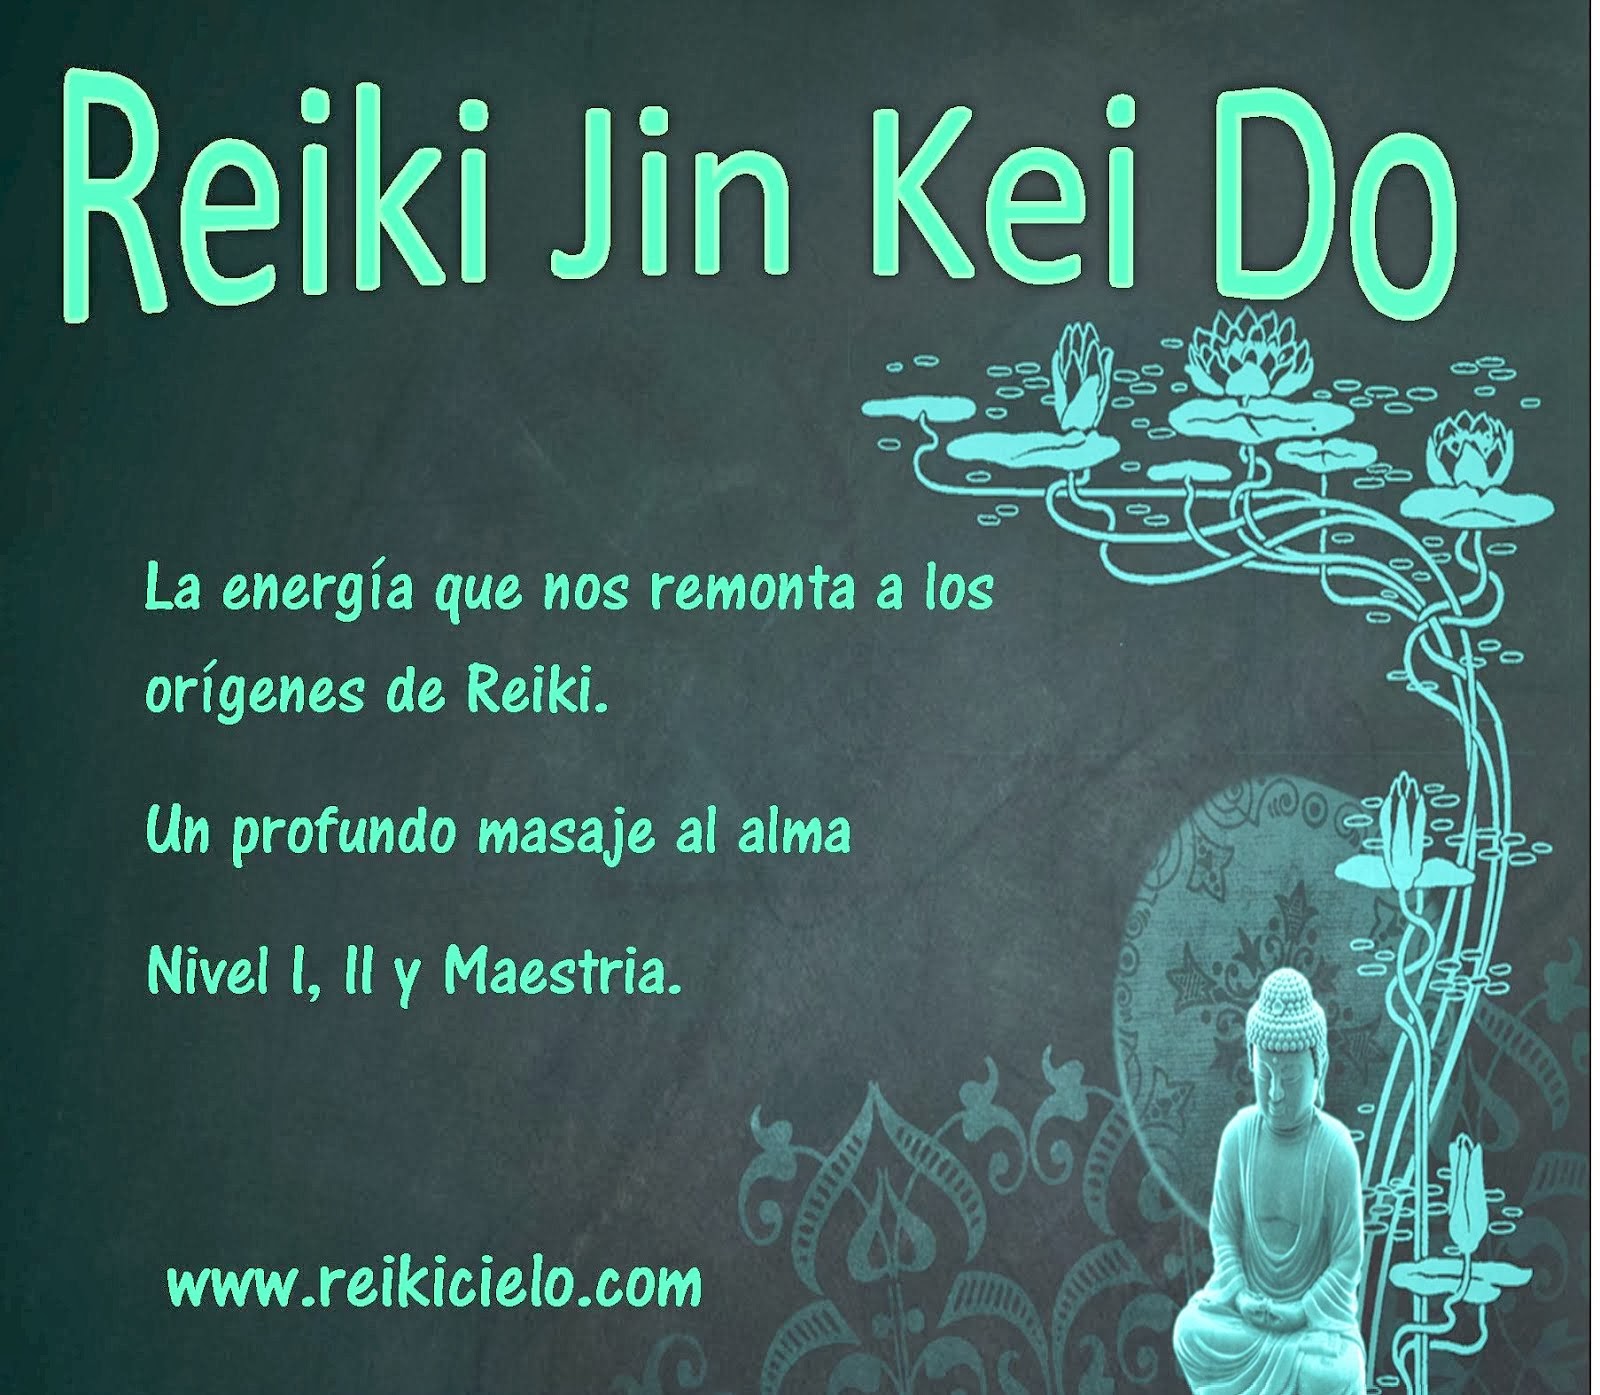 Reiki Jin Kei Do